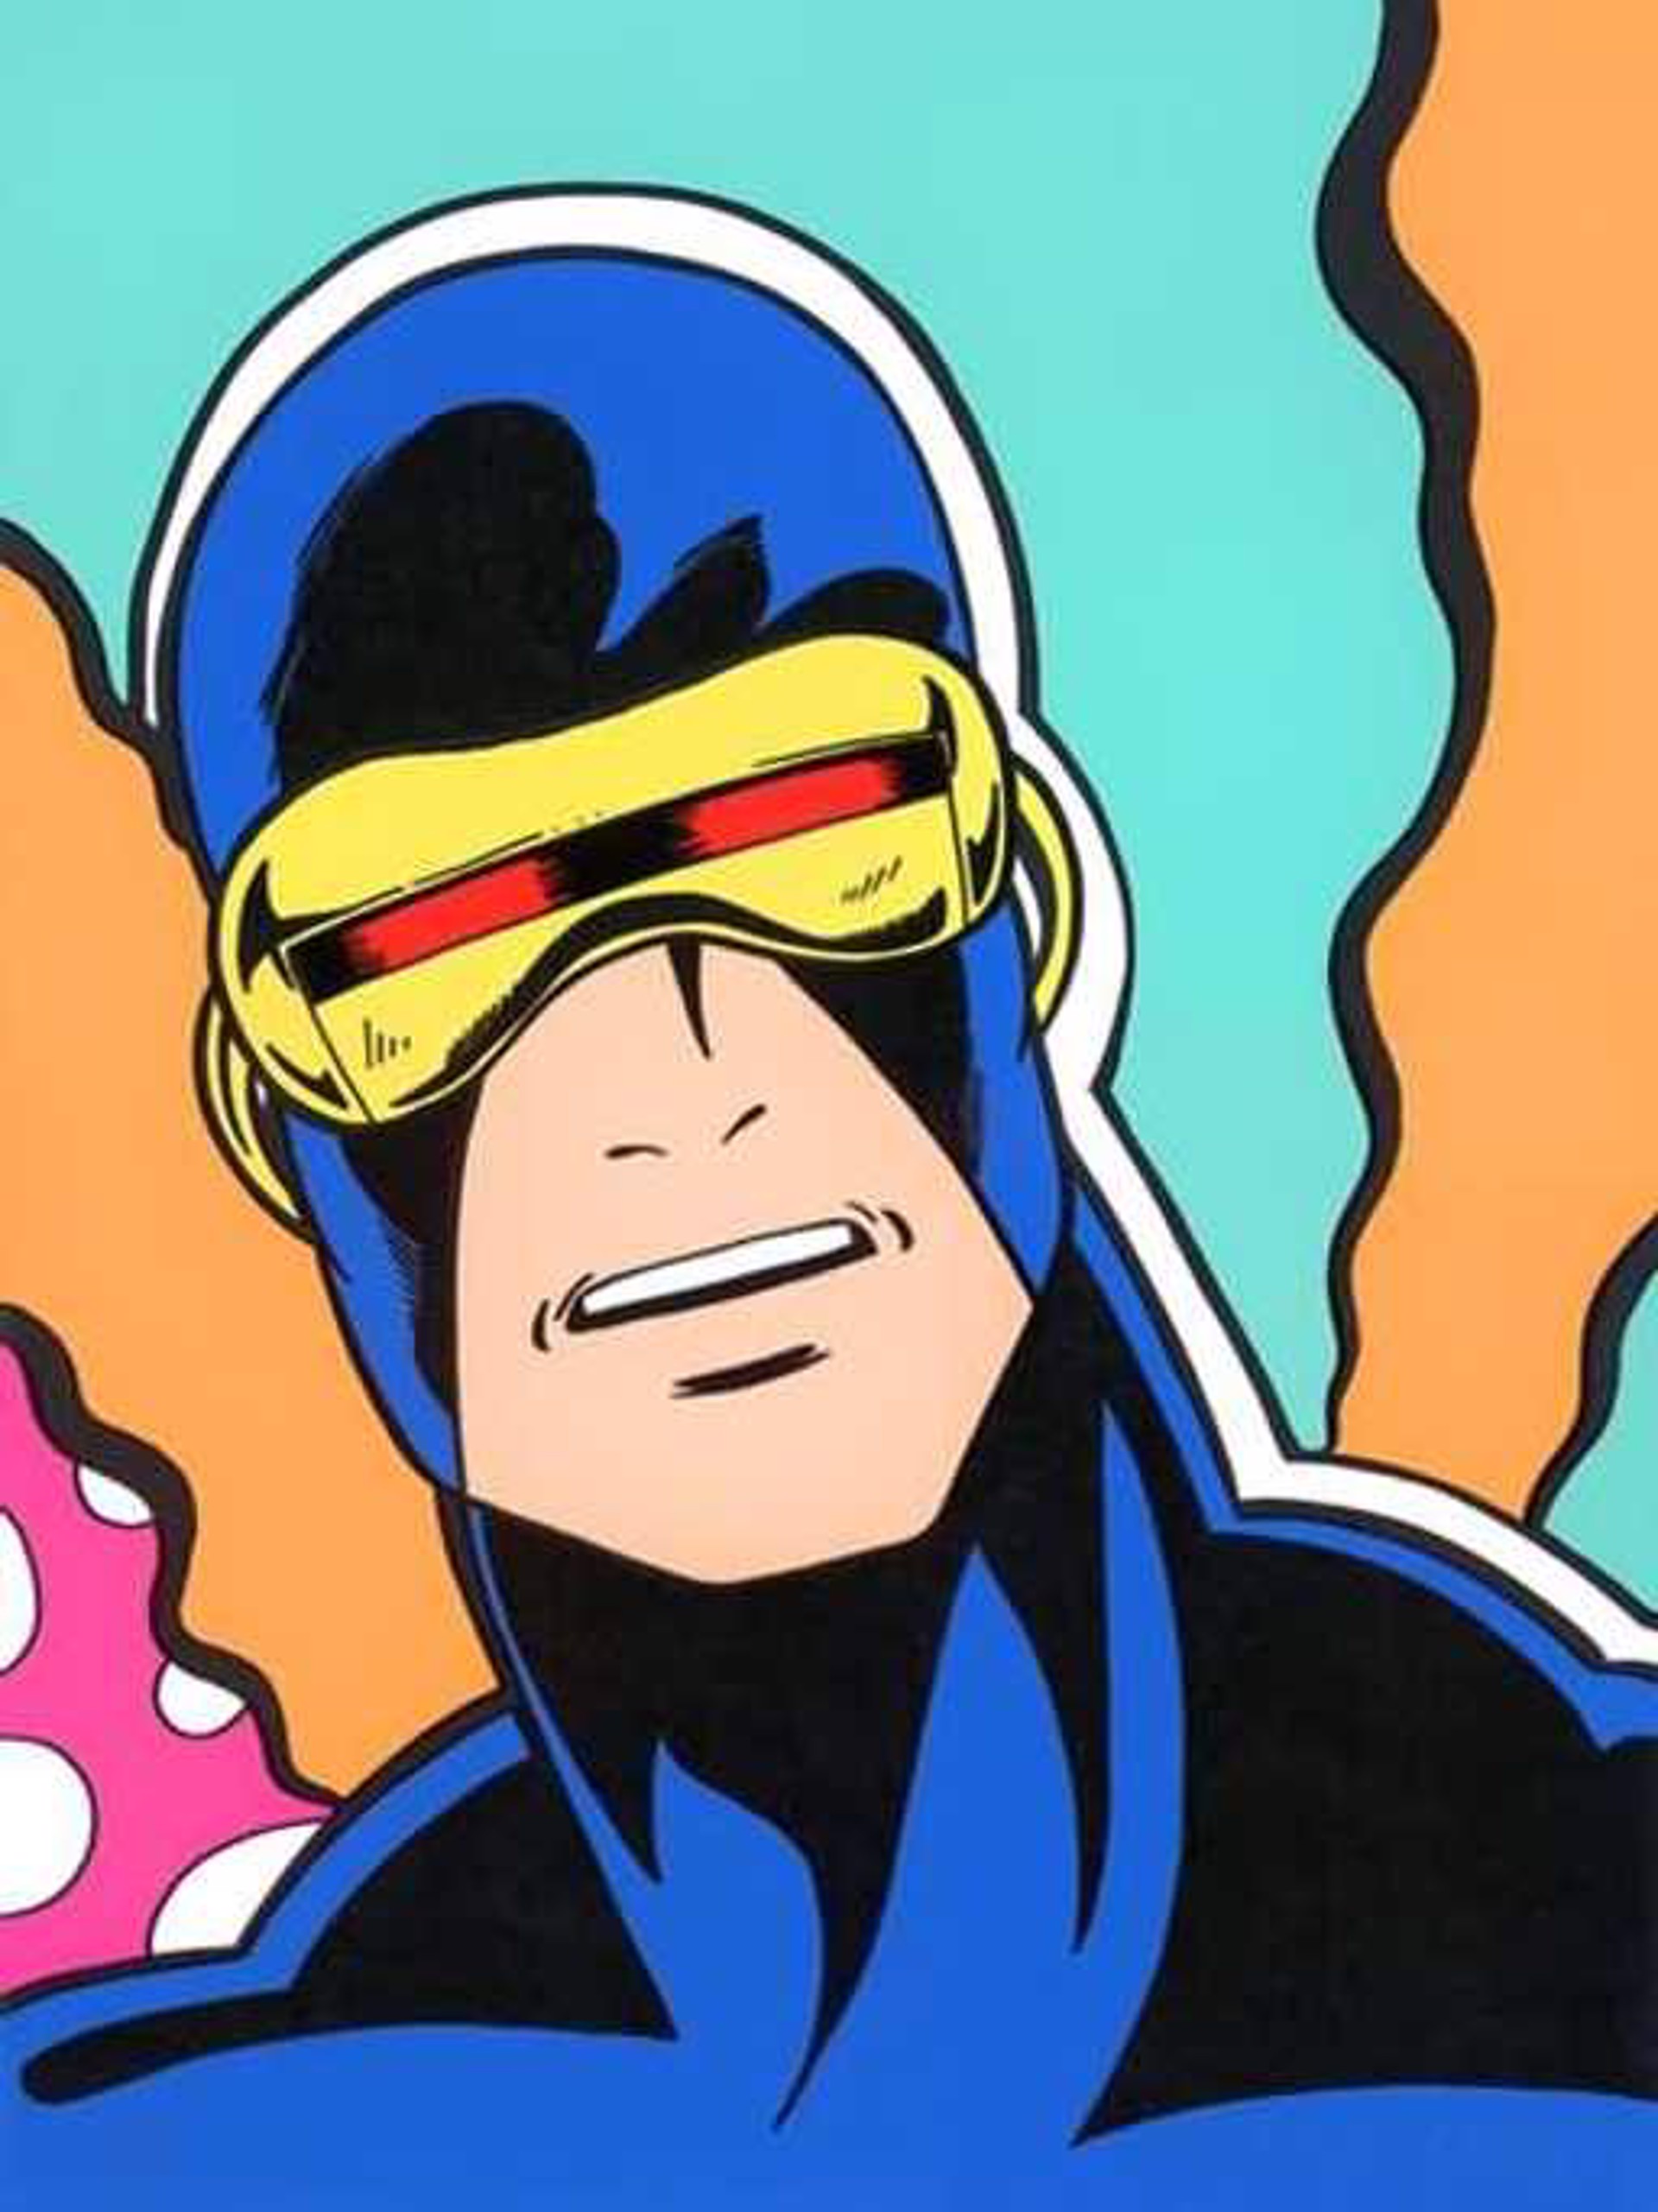 X-Men (Cyclops) by John "Crash" Matos